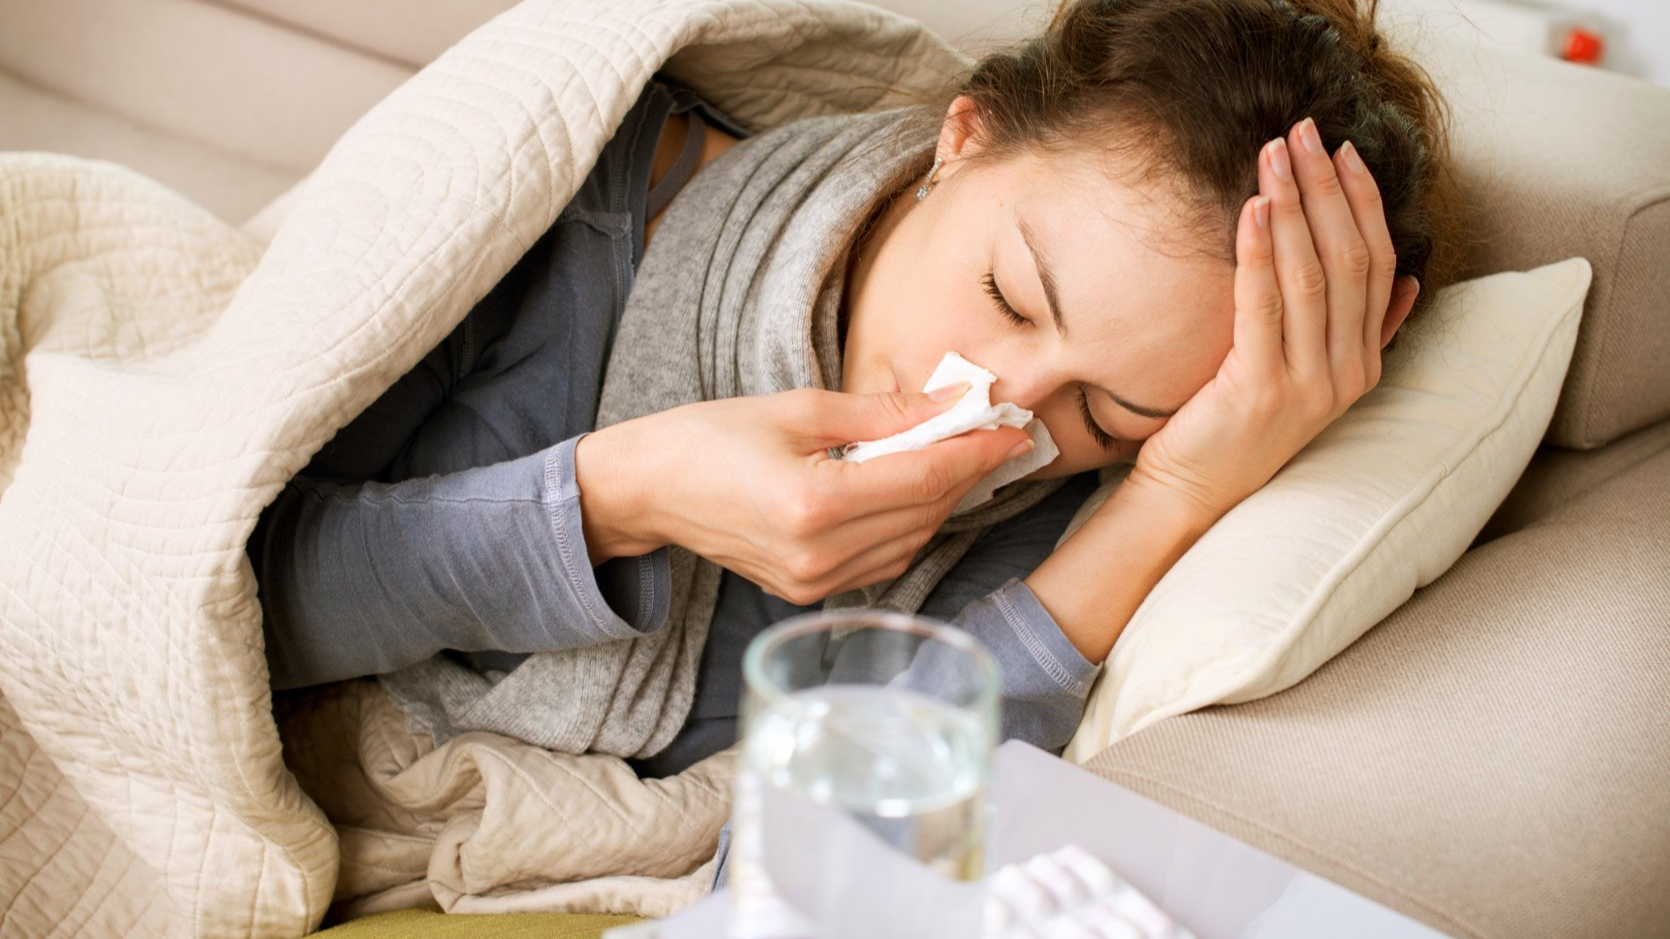 Bạn có thể ăn uống bình thường sau khi bị sốt sau khi nhổ răng khôn hay không?
